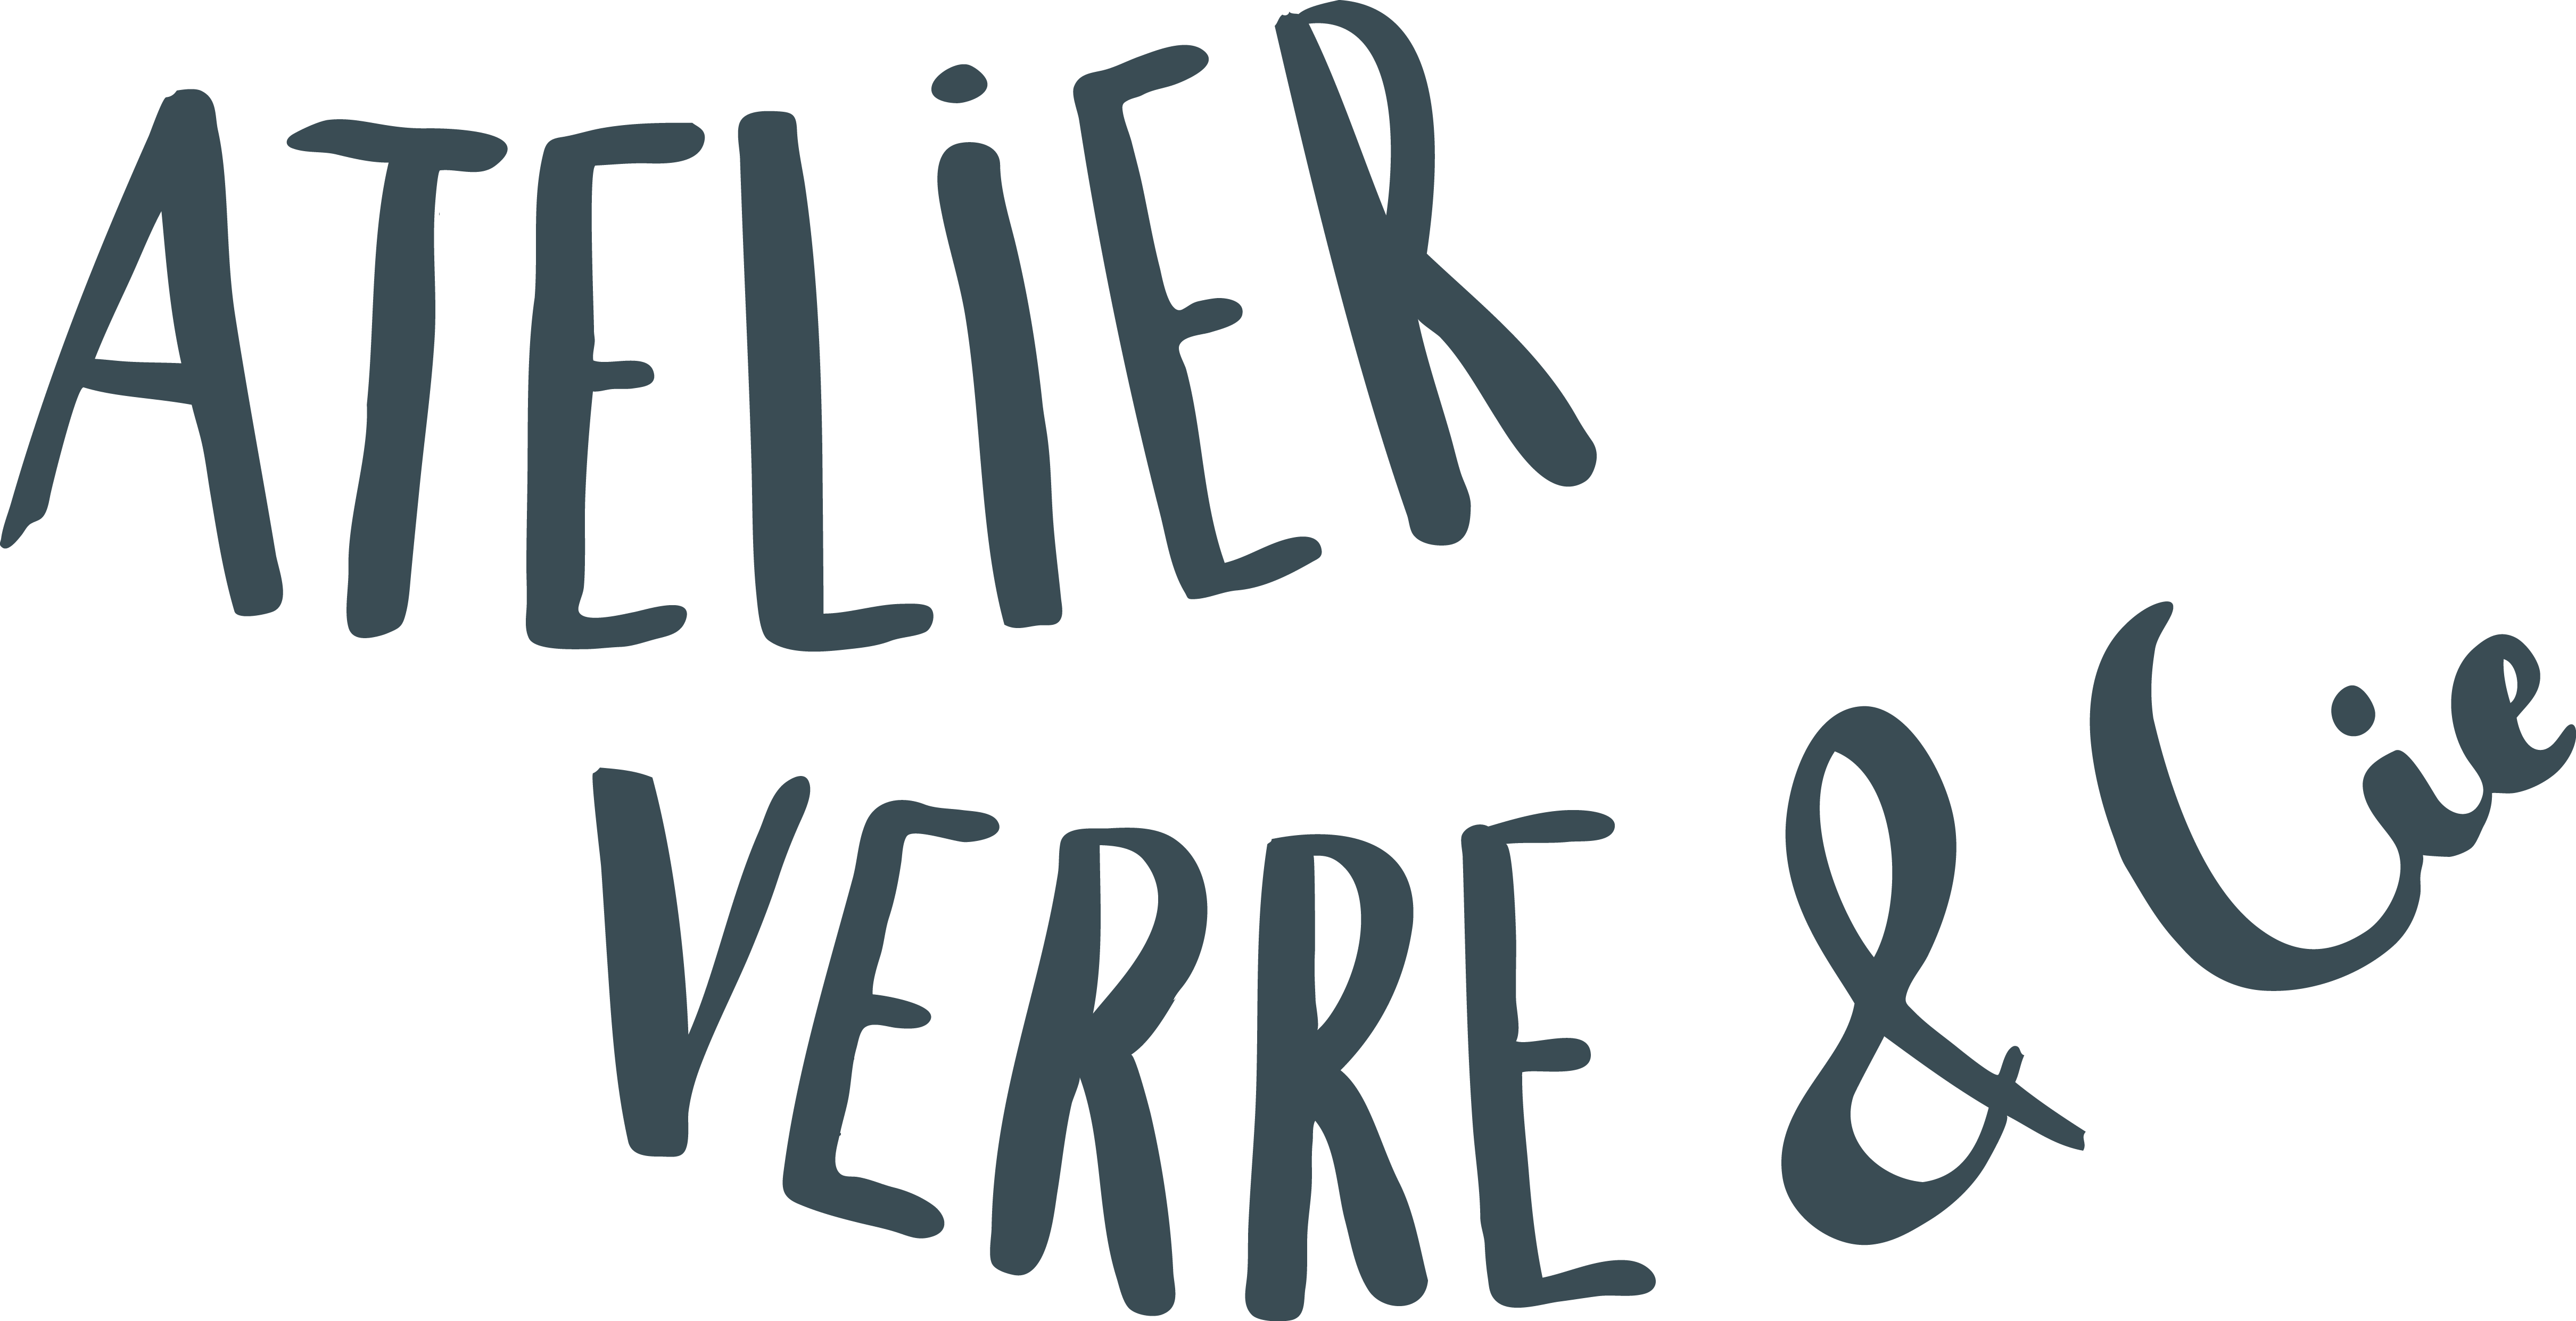 Atelier Verre & Cie